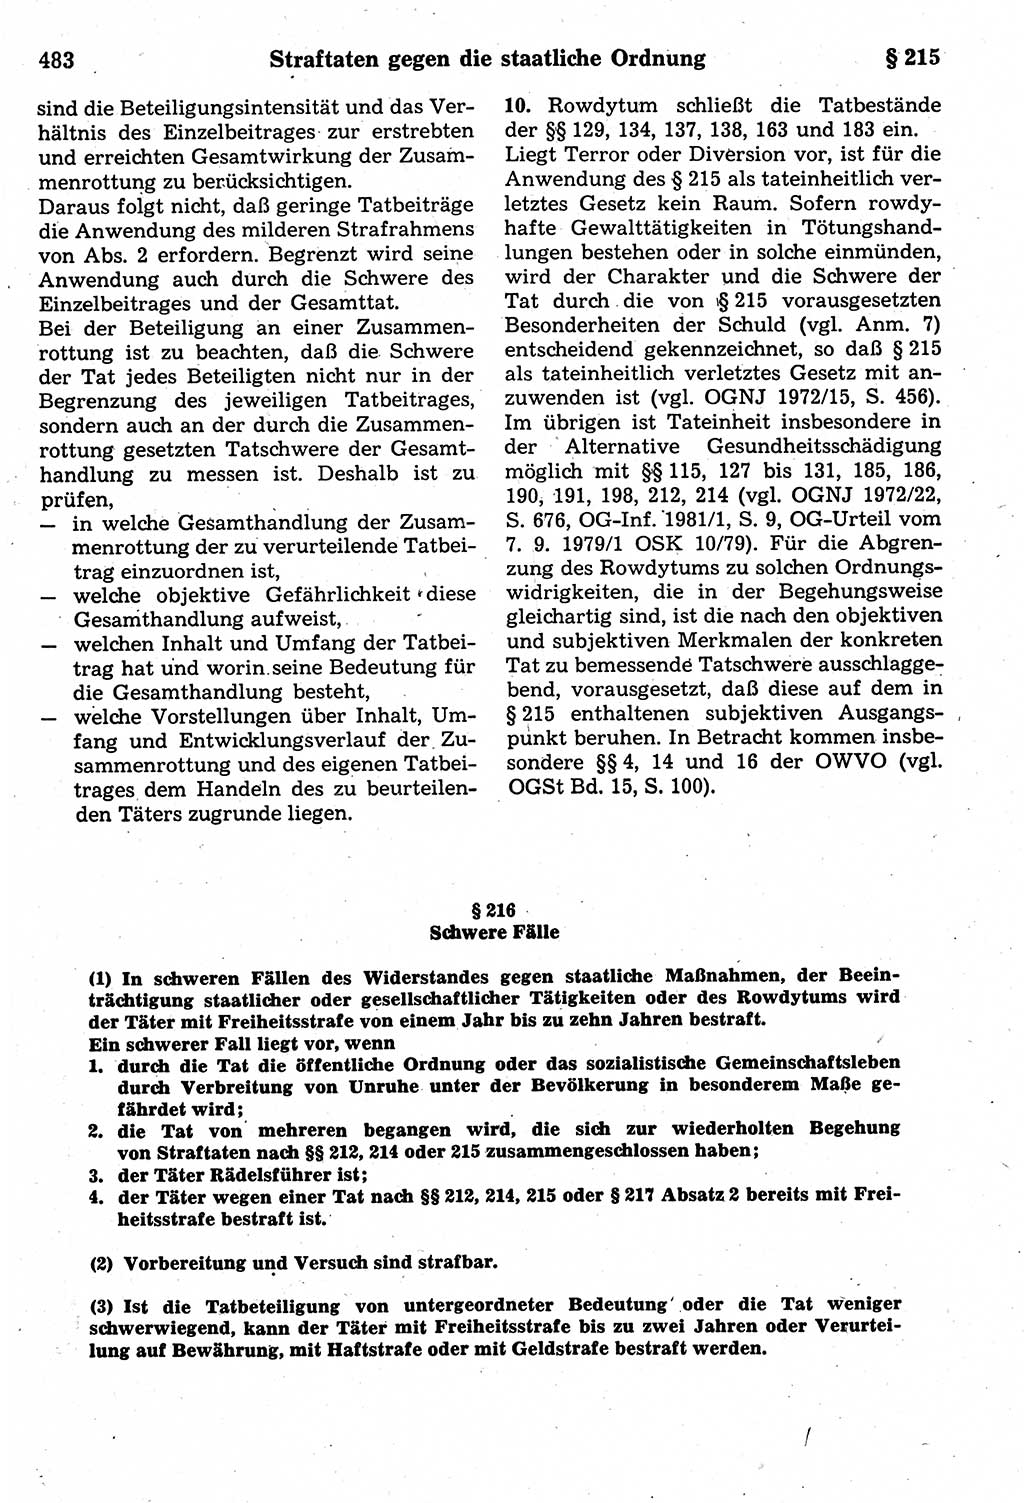 Strafrecht der Deutschen Demokratischen Republik (DDR), Kommentar zum Strafgesetzbuch (StGB) 1987, Seite 483 (Strafr. DDR Komm. StGB 1987, S. 483)